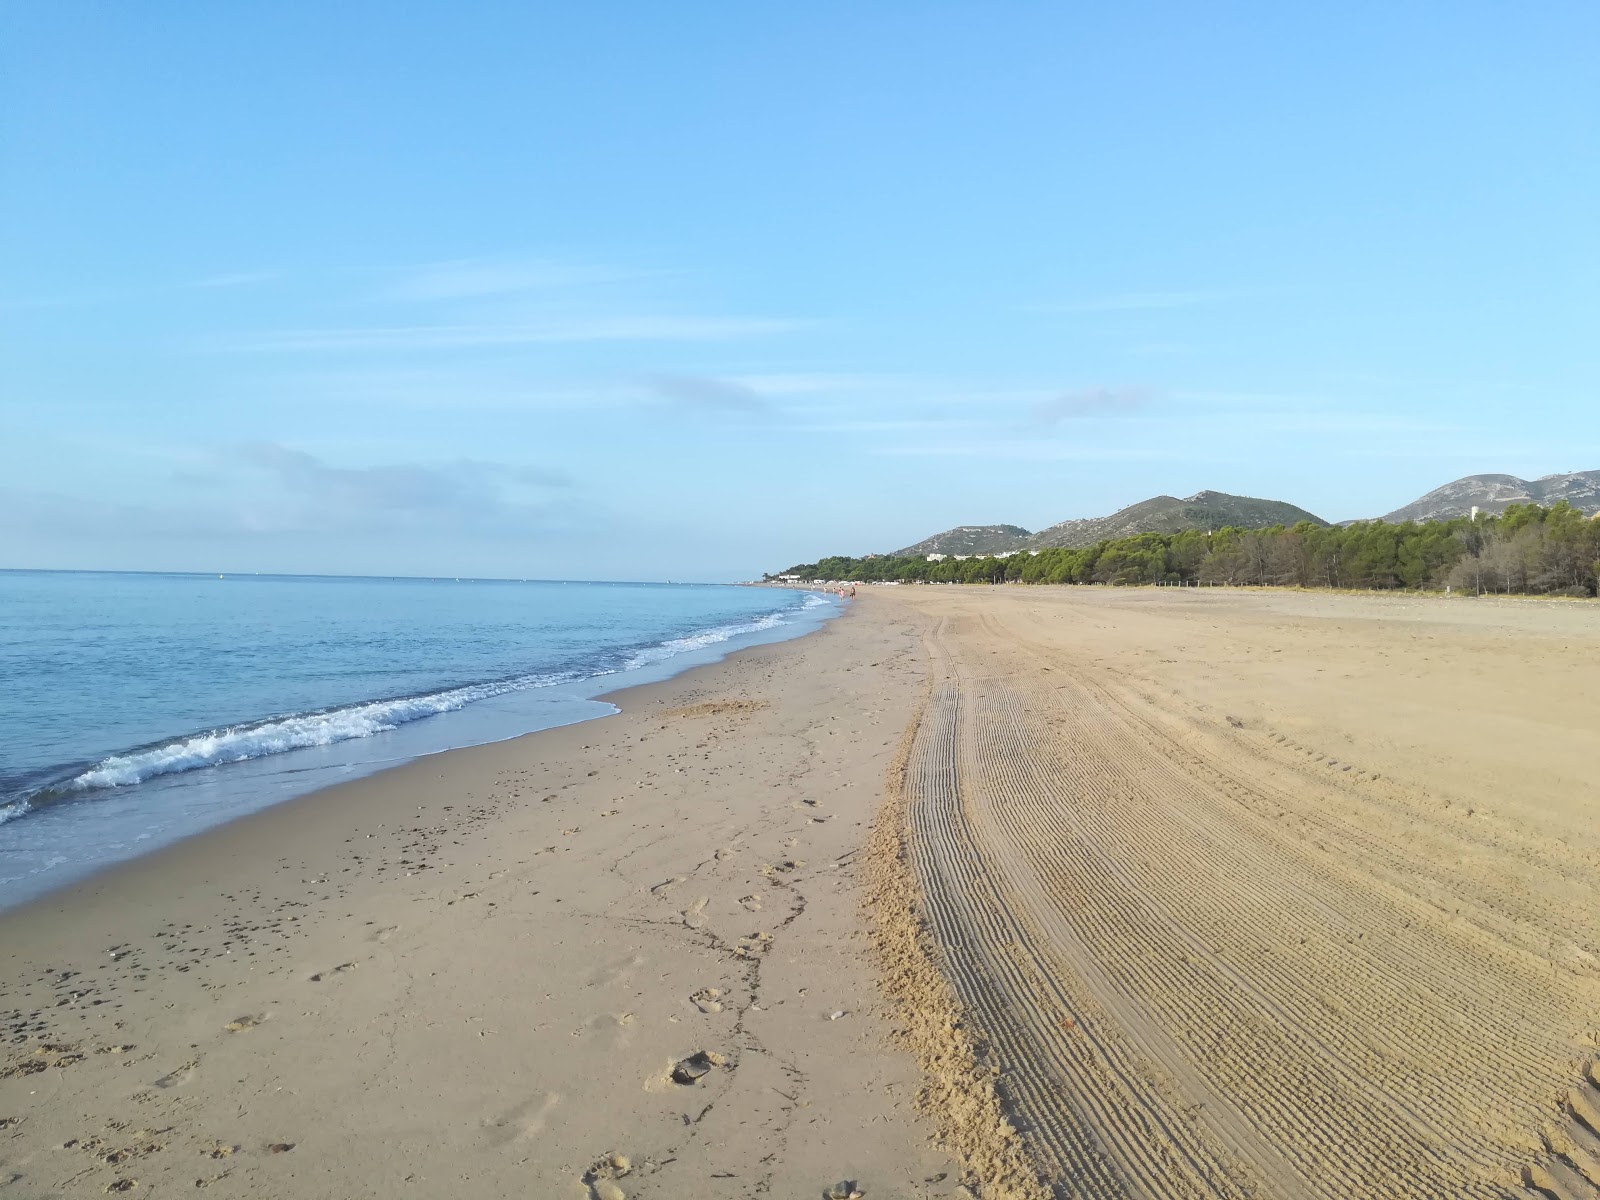 Fotografie cu L'Hospitalet beach cu o suprafață de nisip strălucitor